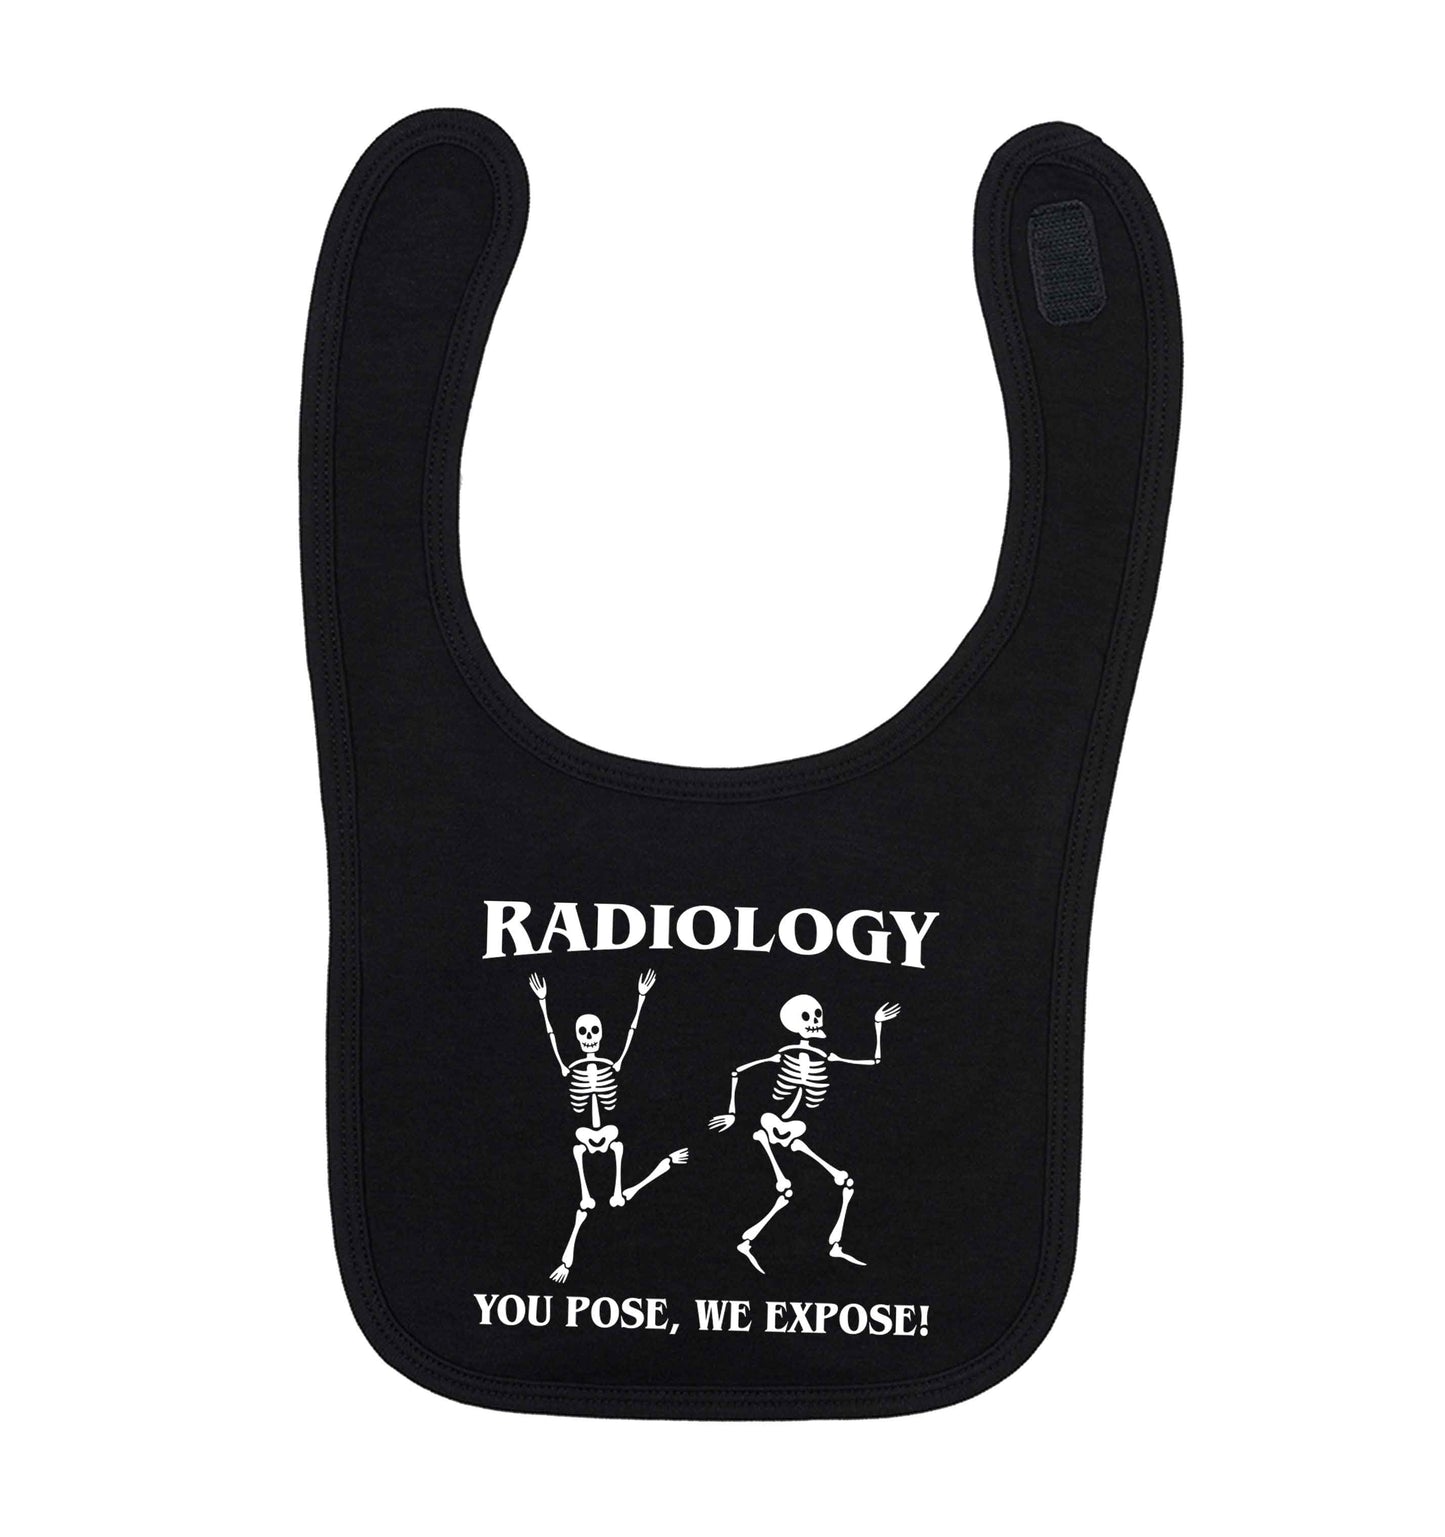 Radiology you pose we expose black baby bib